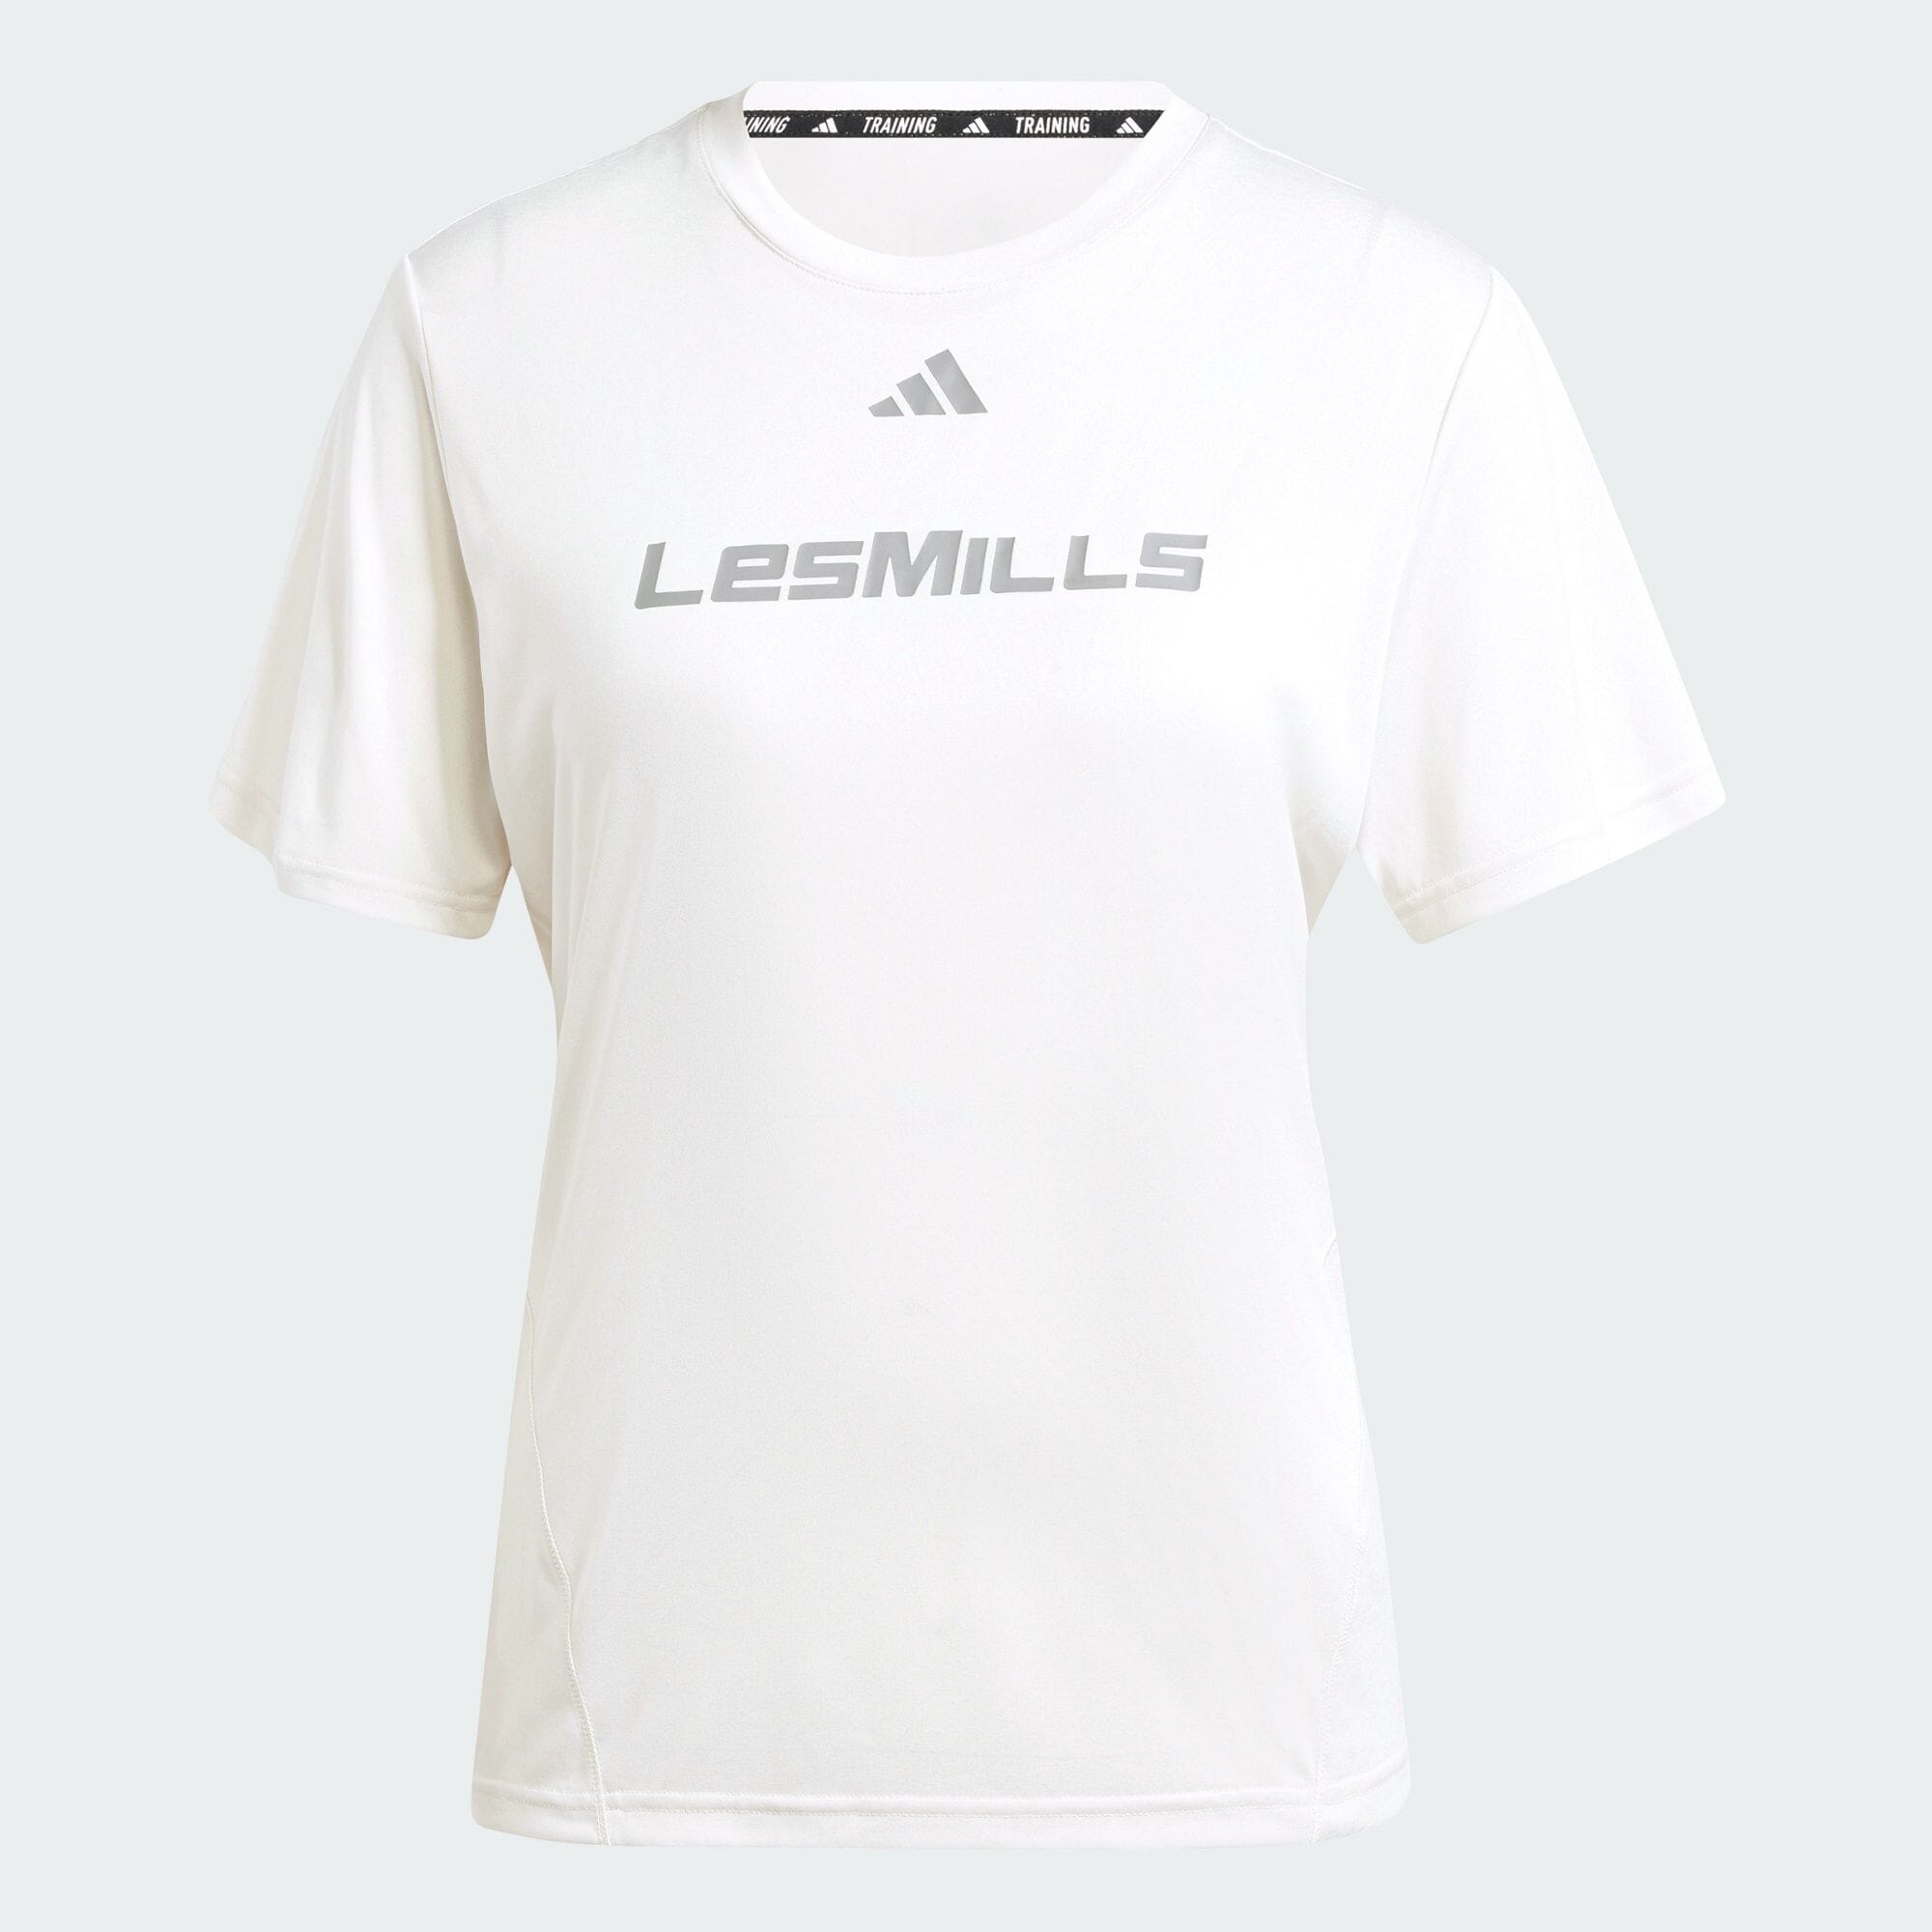 Les Mills グラフィック 半袖Tシャツ レディース ジム・トレーニング